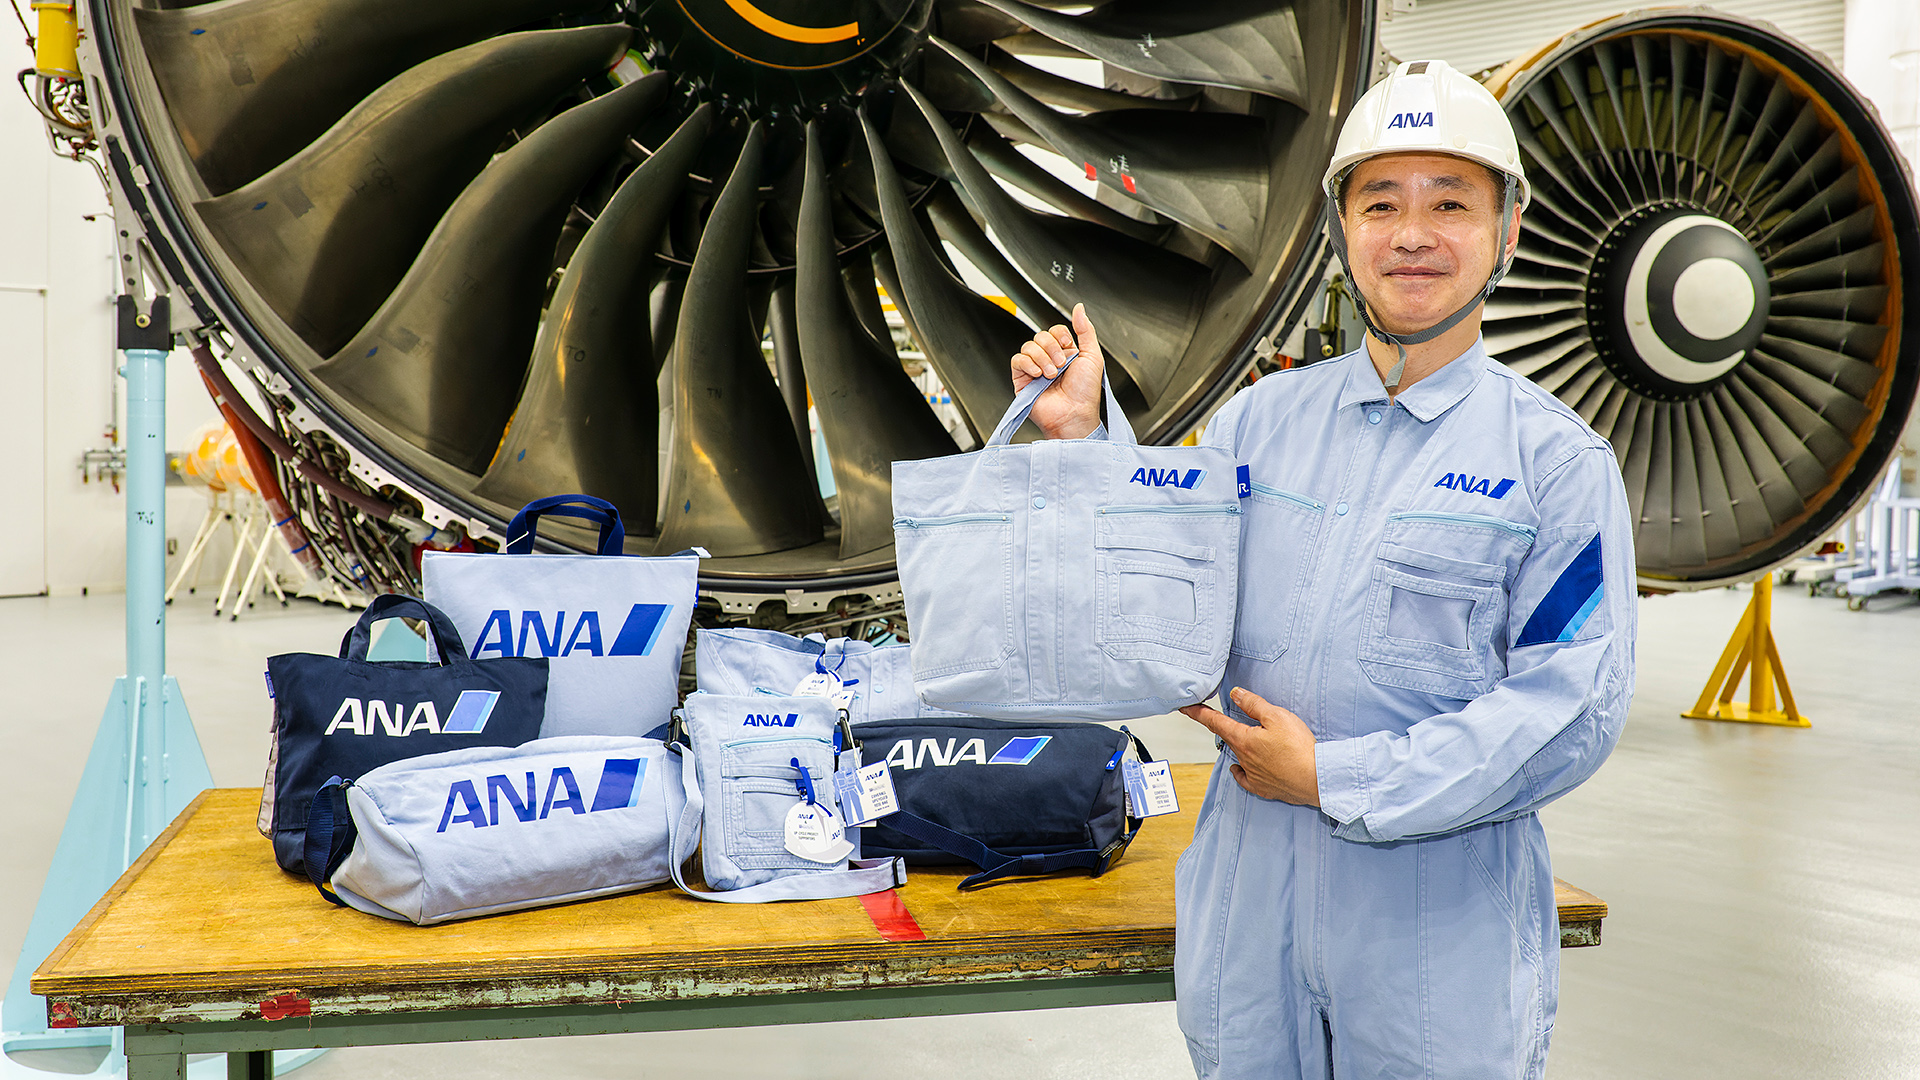 ANA】整備士の作業着を再利用したトートバッグ販売について - Aviation ...